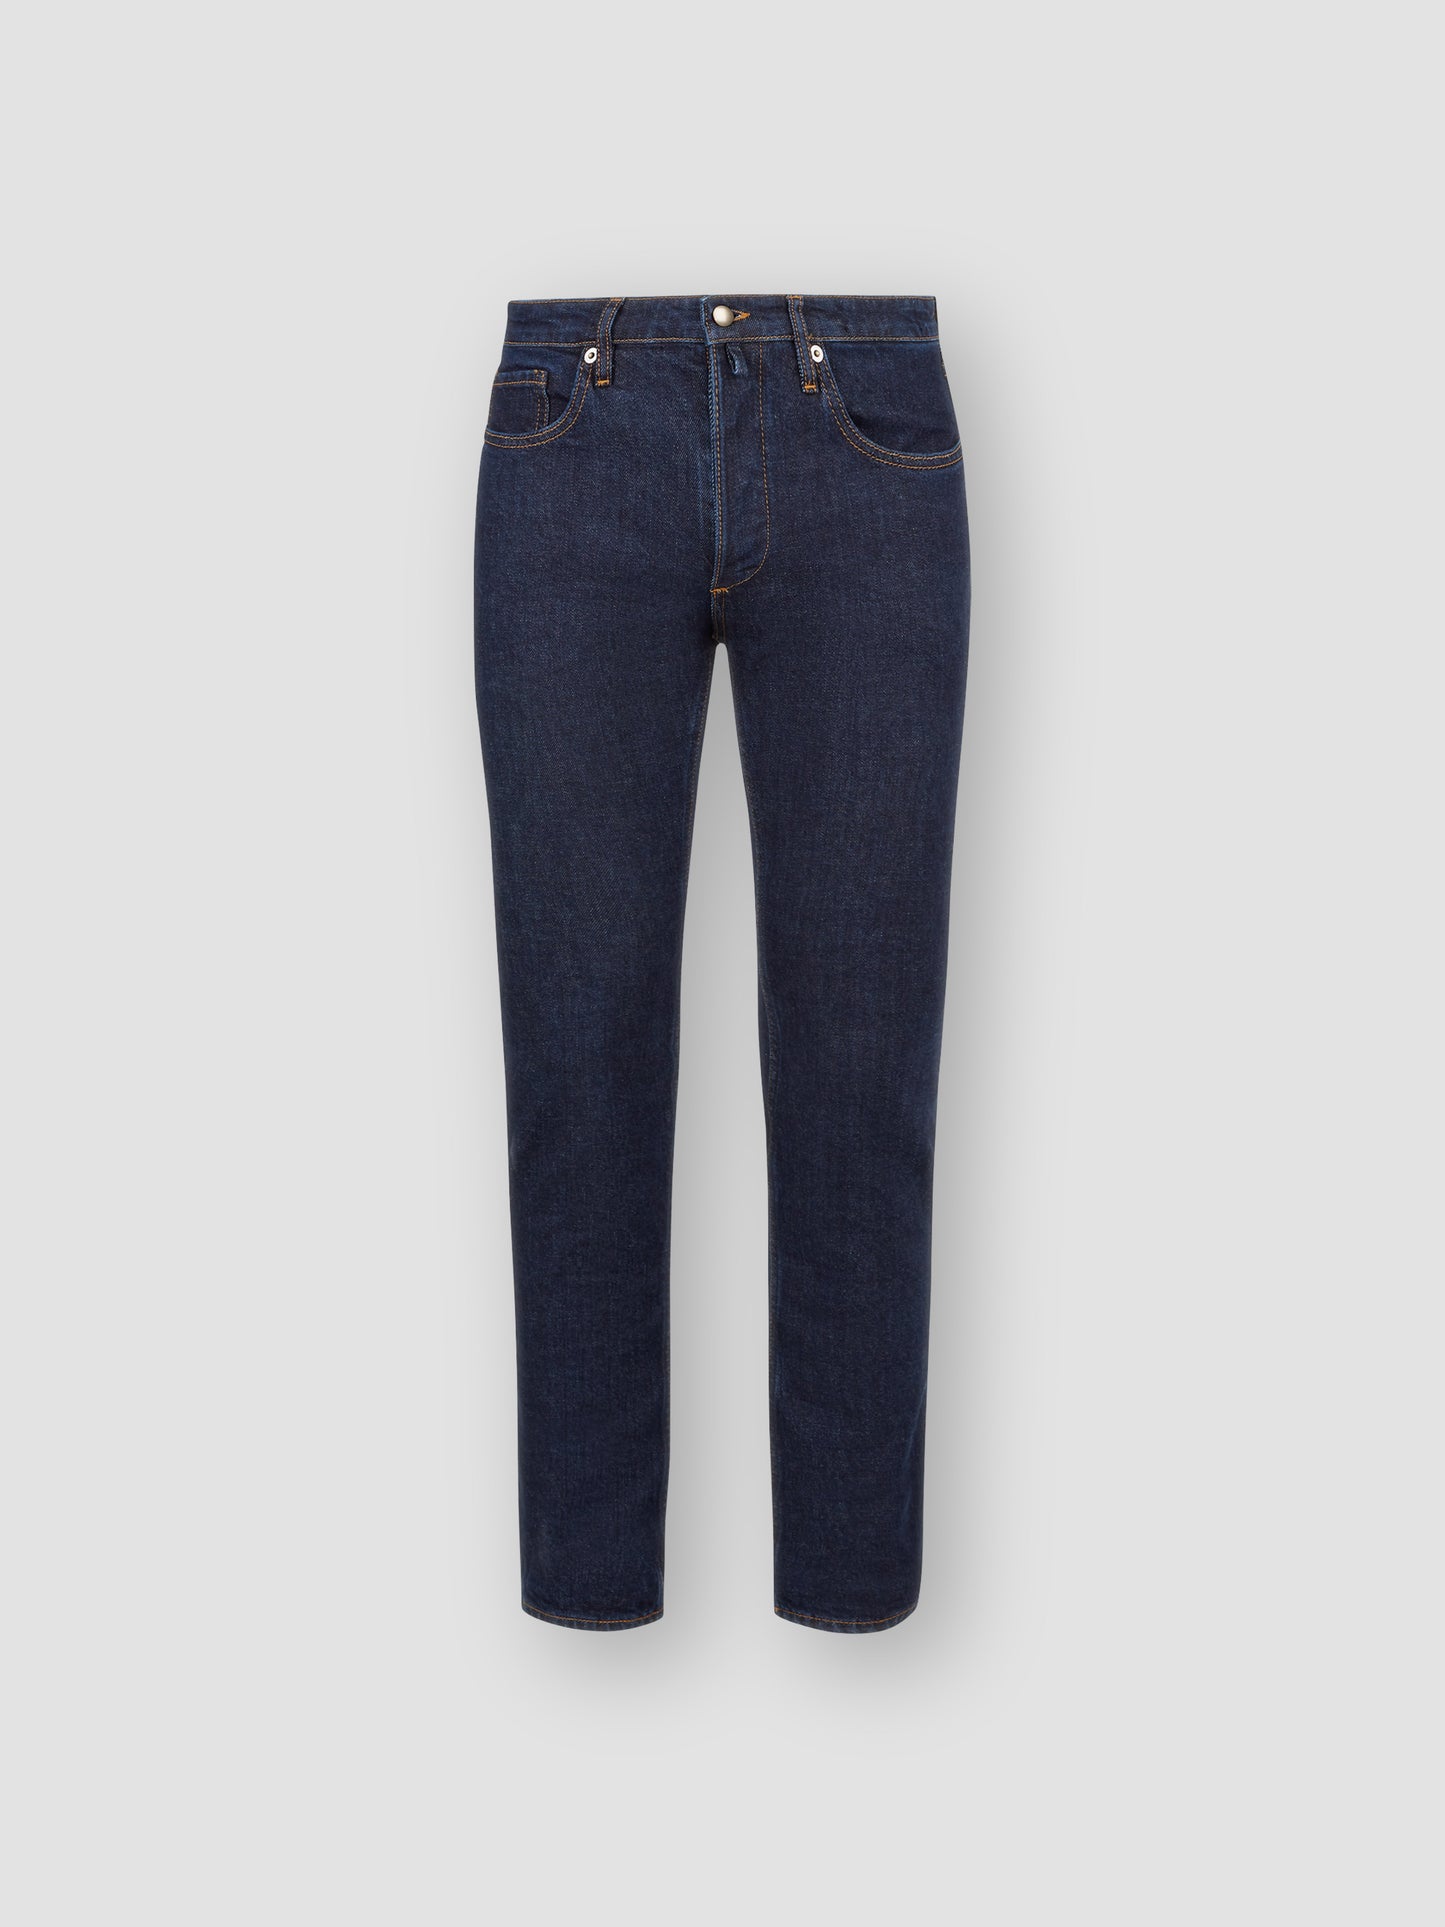 Five Pocket Denim Jeans Dark Blue Product Front